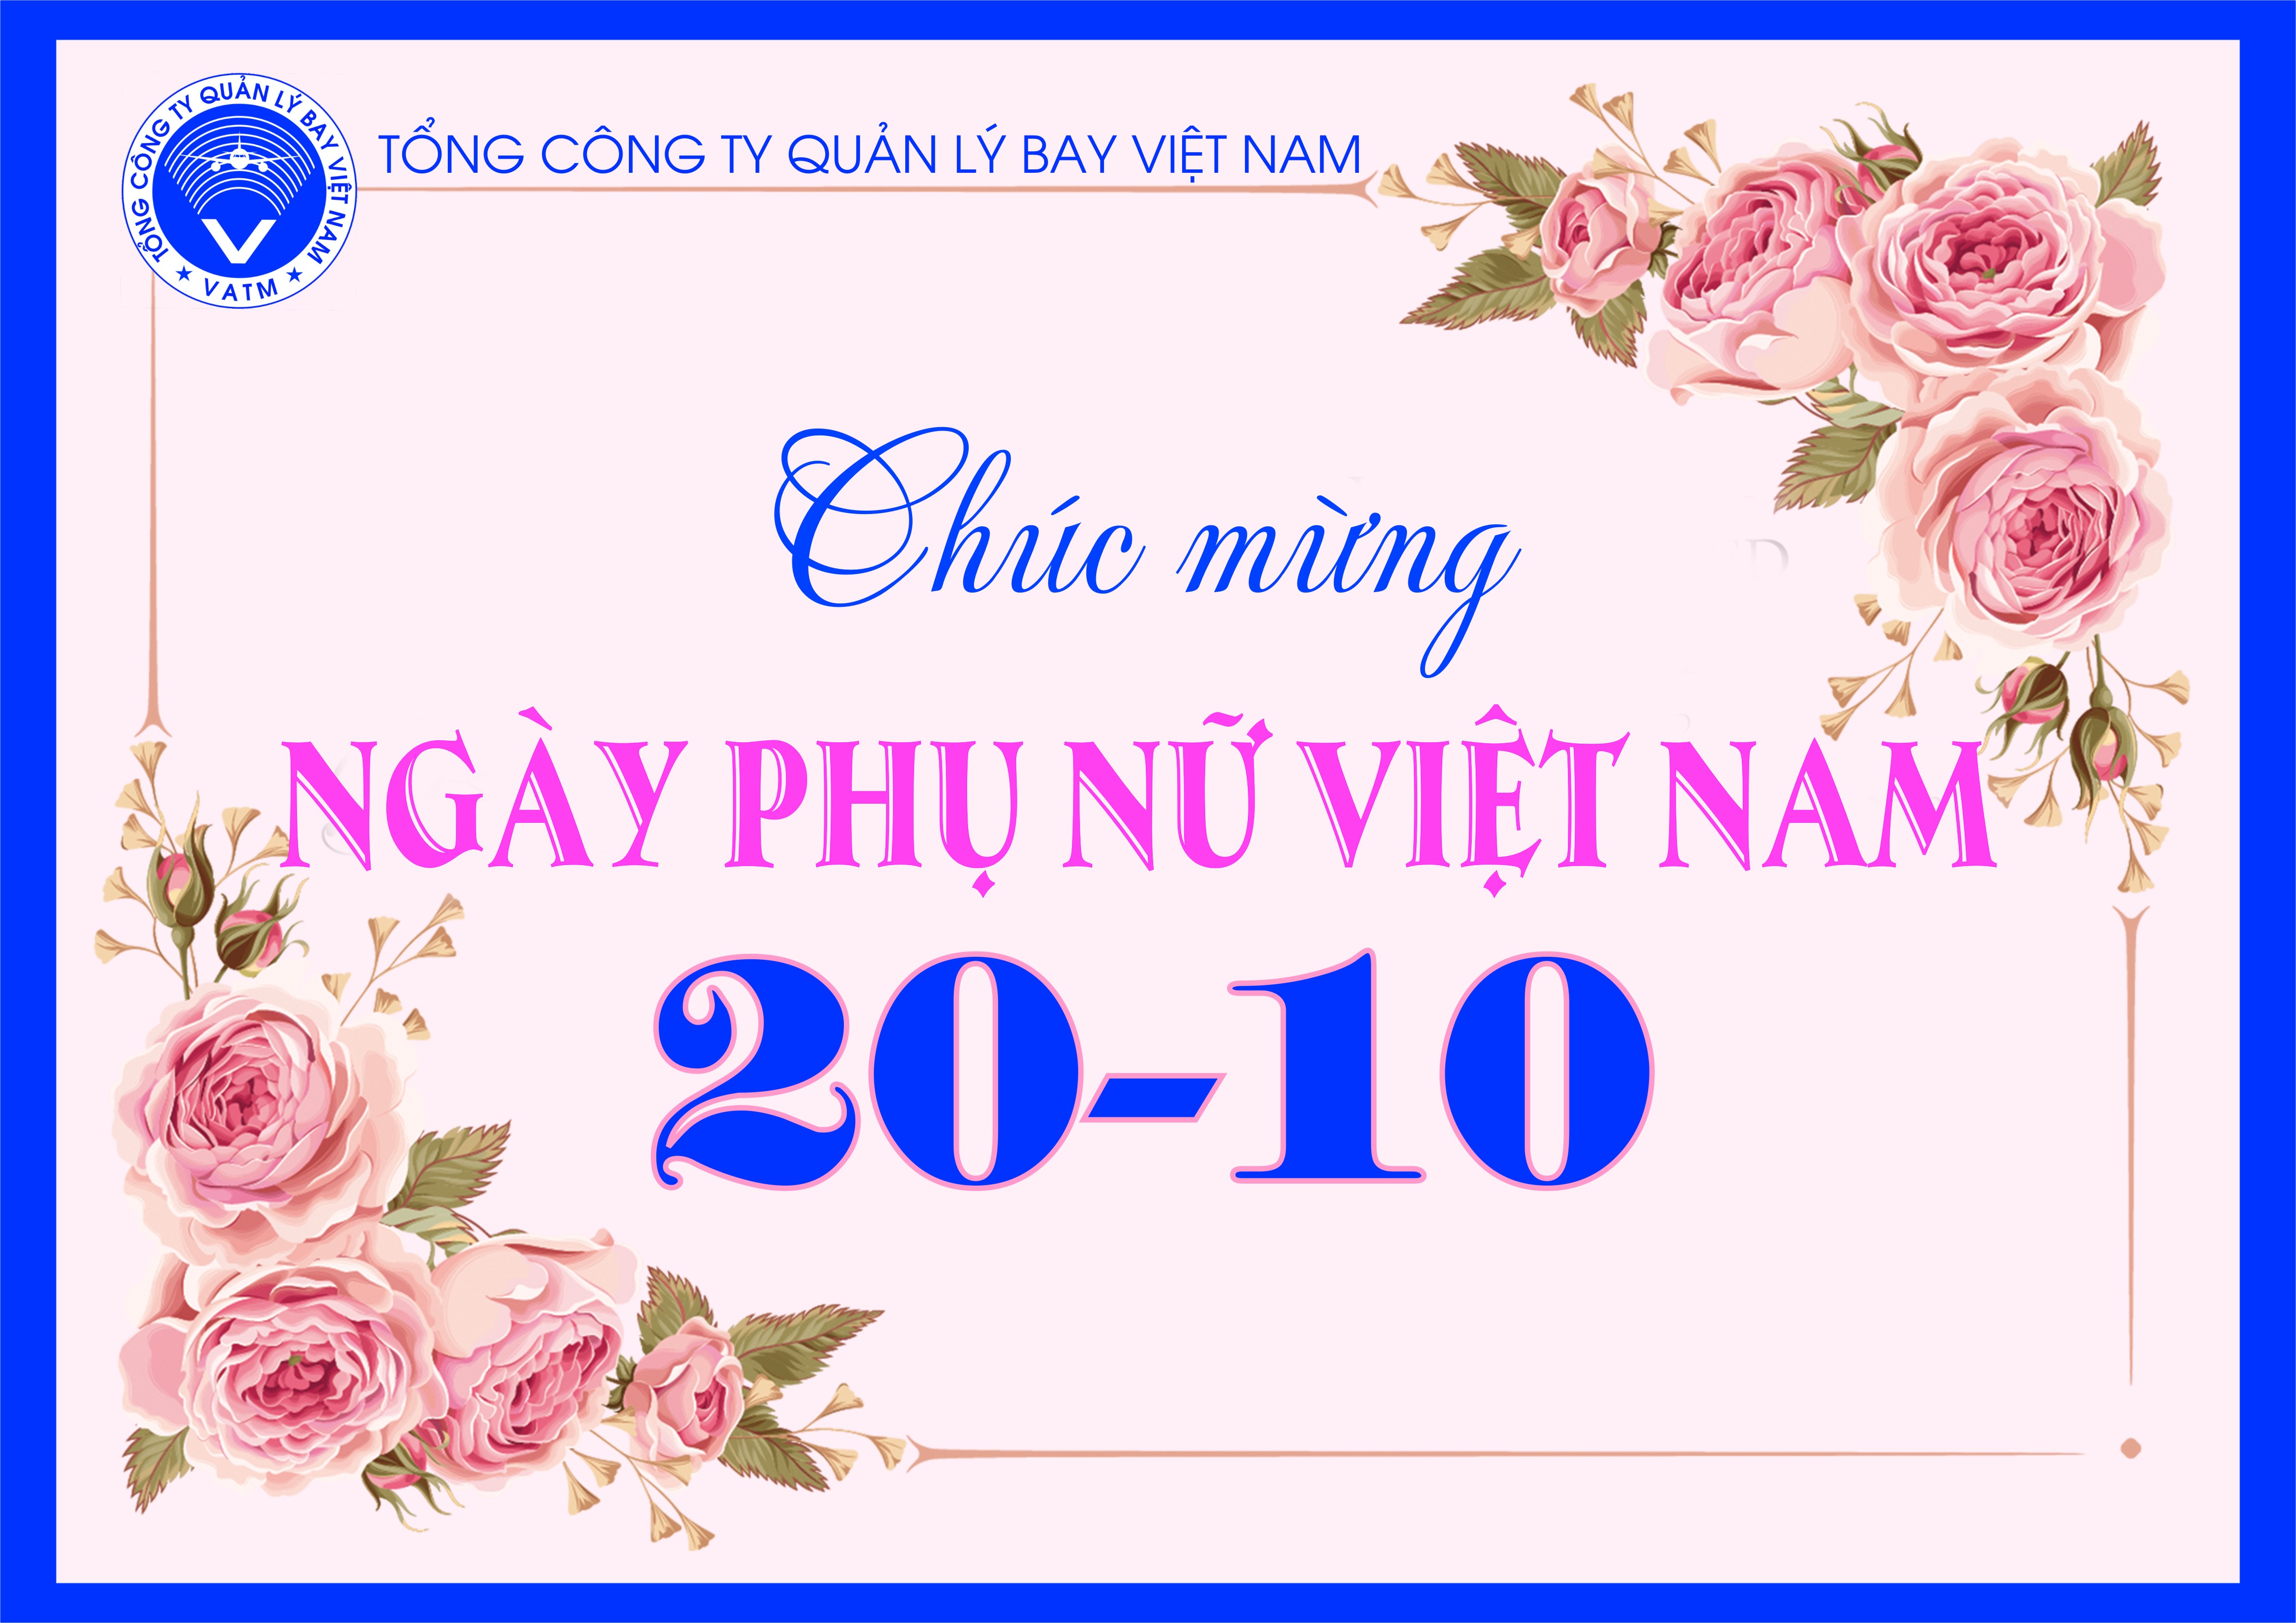 Lãnh đạo VATM chúc mừng ngày Phụ nữ Việt Nam 20-10